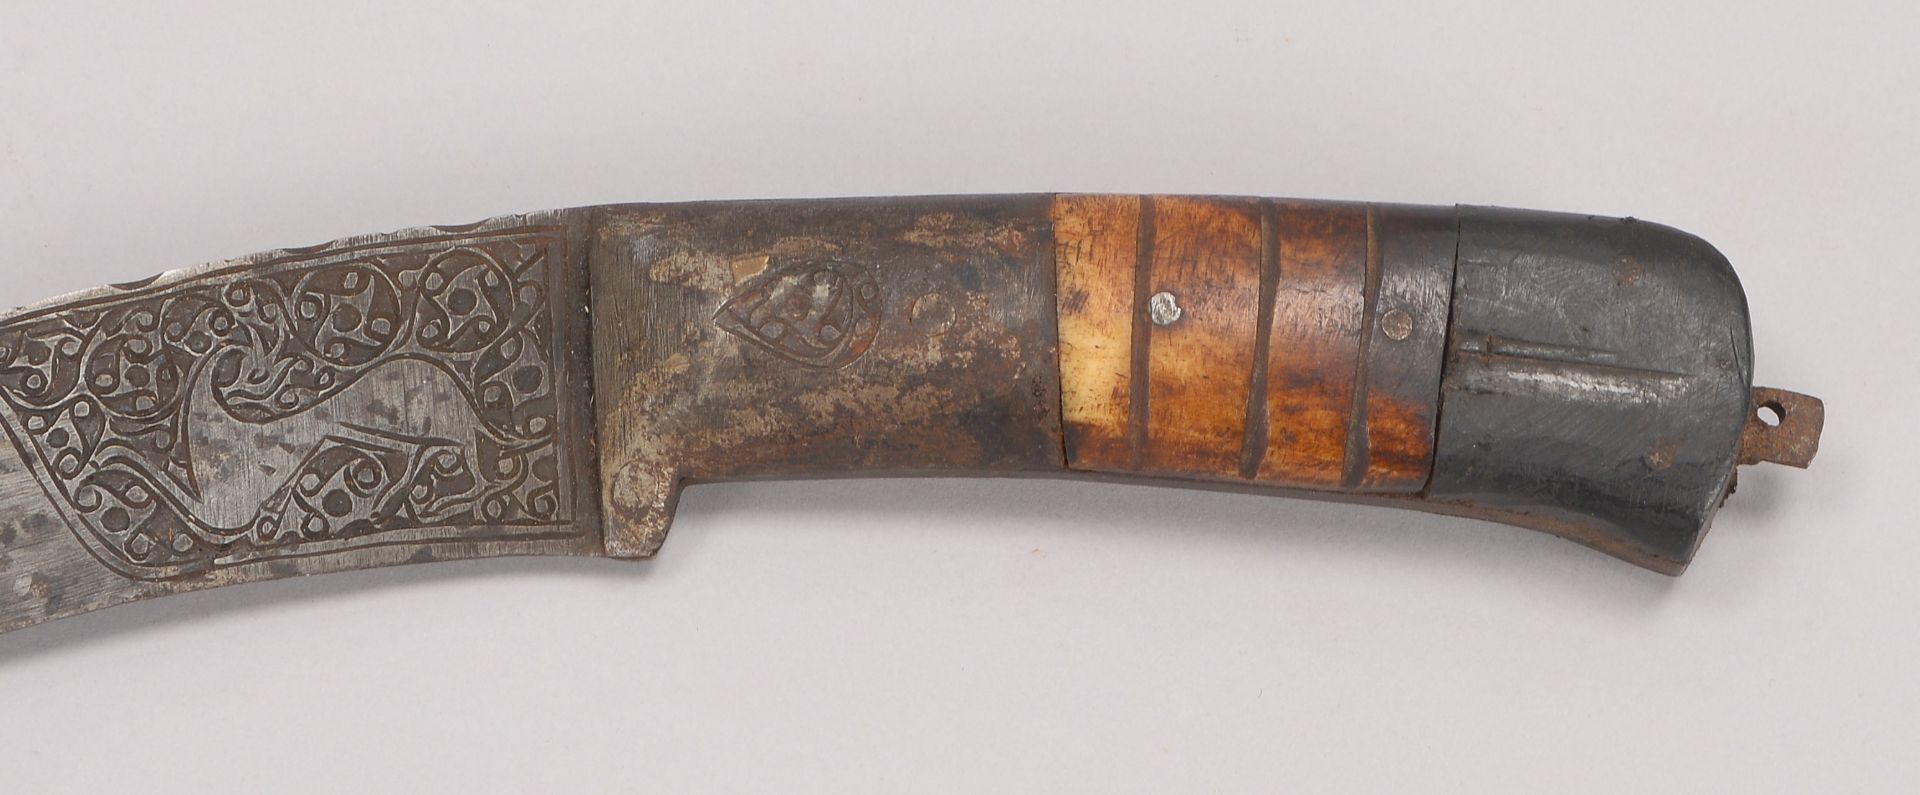 Dolch (Iran), geschwungene Klinge mit Reliefdekor, Griff partiell mit Knochen staffiert, Laenge Klin - Image 3 of 3